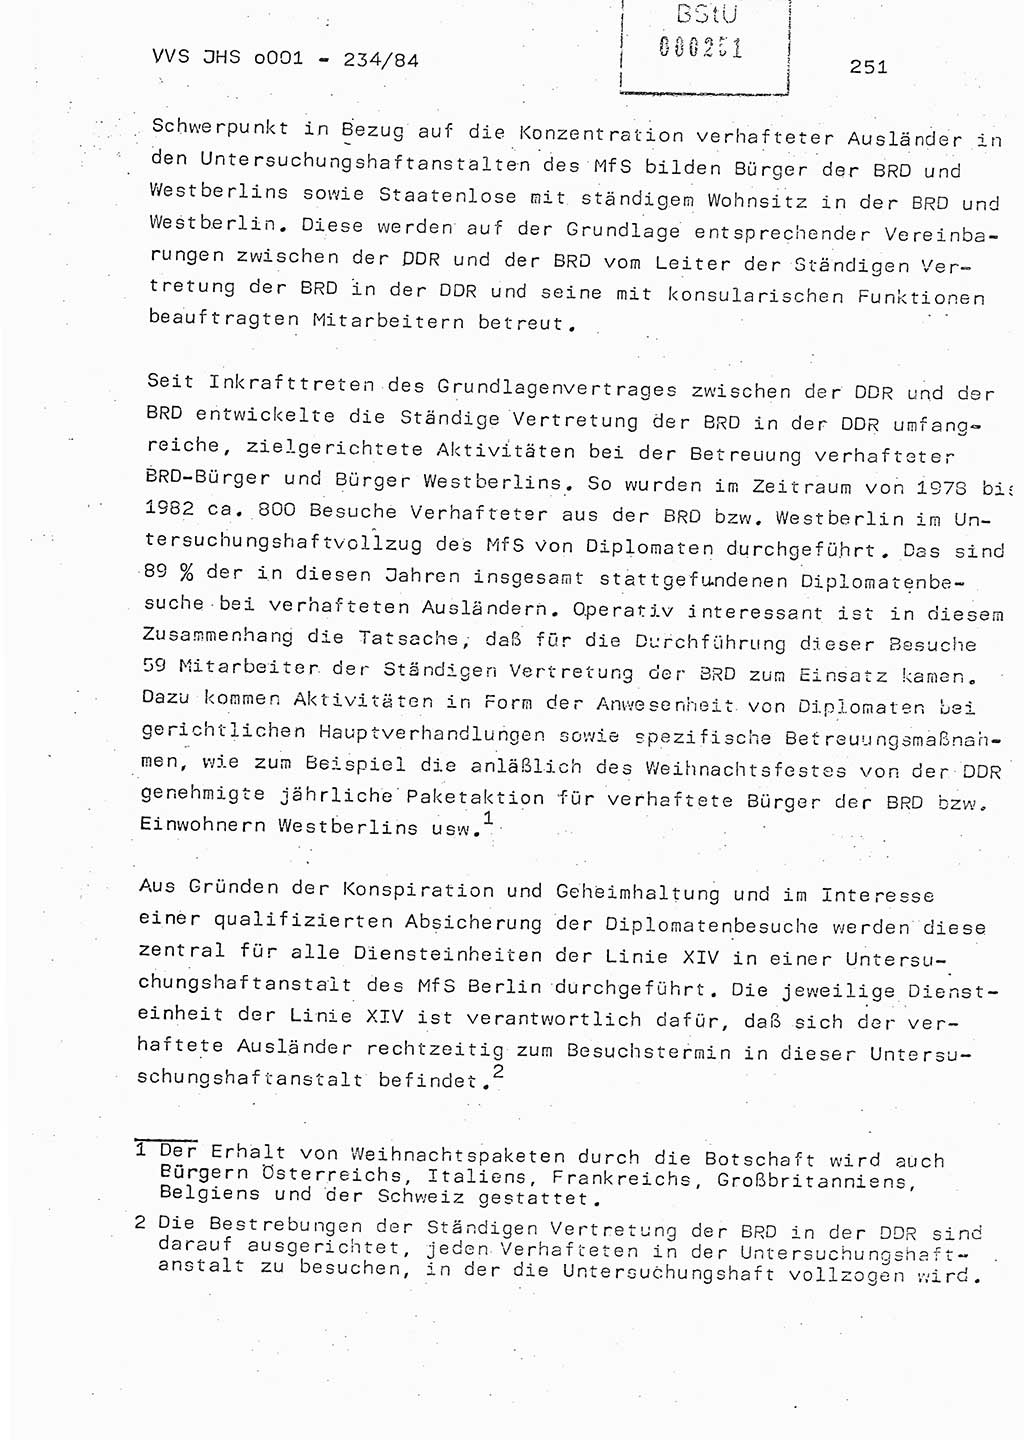 Dissertation Oberst Siegfried Rataizick (Abt. ⅩⅣ), Oberstleutnant Volkmar Heinz (Abt. ⅩⅣ), Oberstleutnant Werner Stein (HA Ⅸ), Hauptmann Heinz Conrad (JHS), Ministerium für Staatssicherheit (MfS) [Deutsche Demokratische Republik (DDR)], Juristische Hochschule (JHS), Vertrauliche Verschlußsache (VVS) o001-234/84, Potsdam 1984, Seite 251 (Diss. MfS DDR JHS VVS o001-234/84 1984, S. 251)